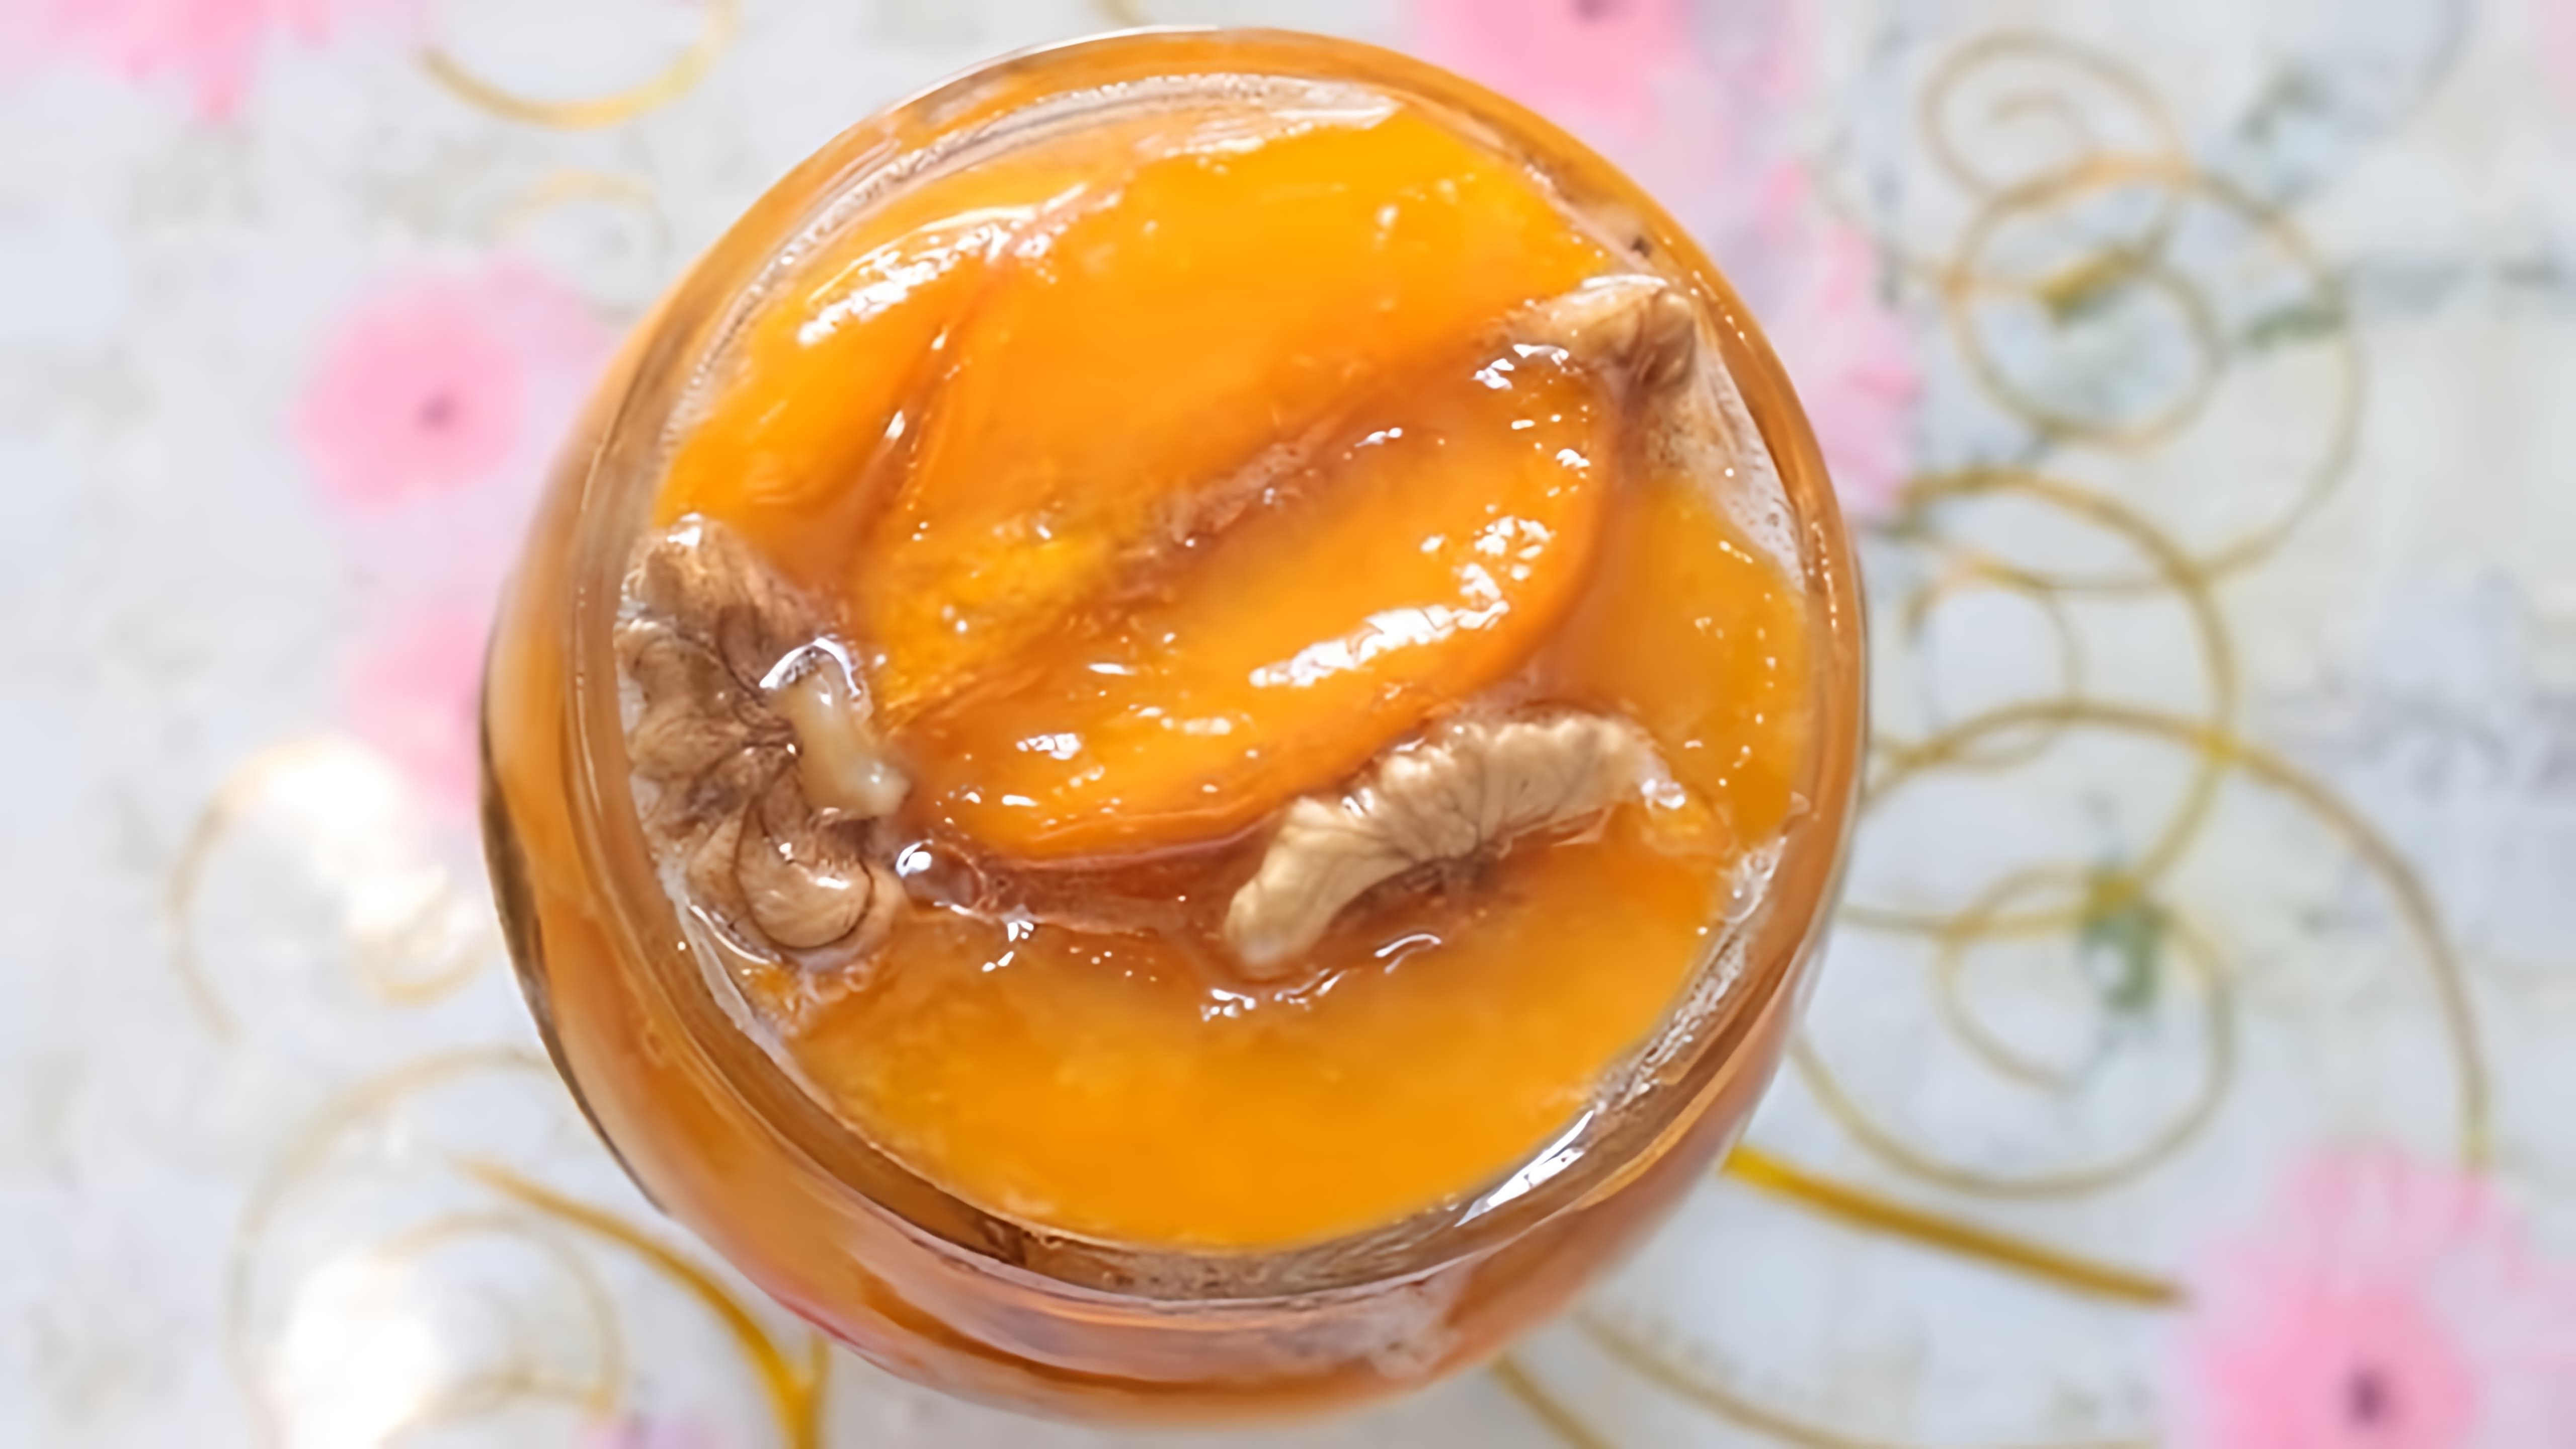 В этом видео демонстрируется рецепт приготовления варенья из персиков по азербайджанскому рецепту